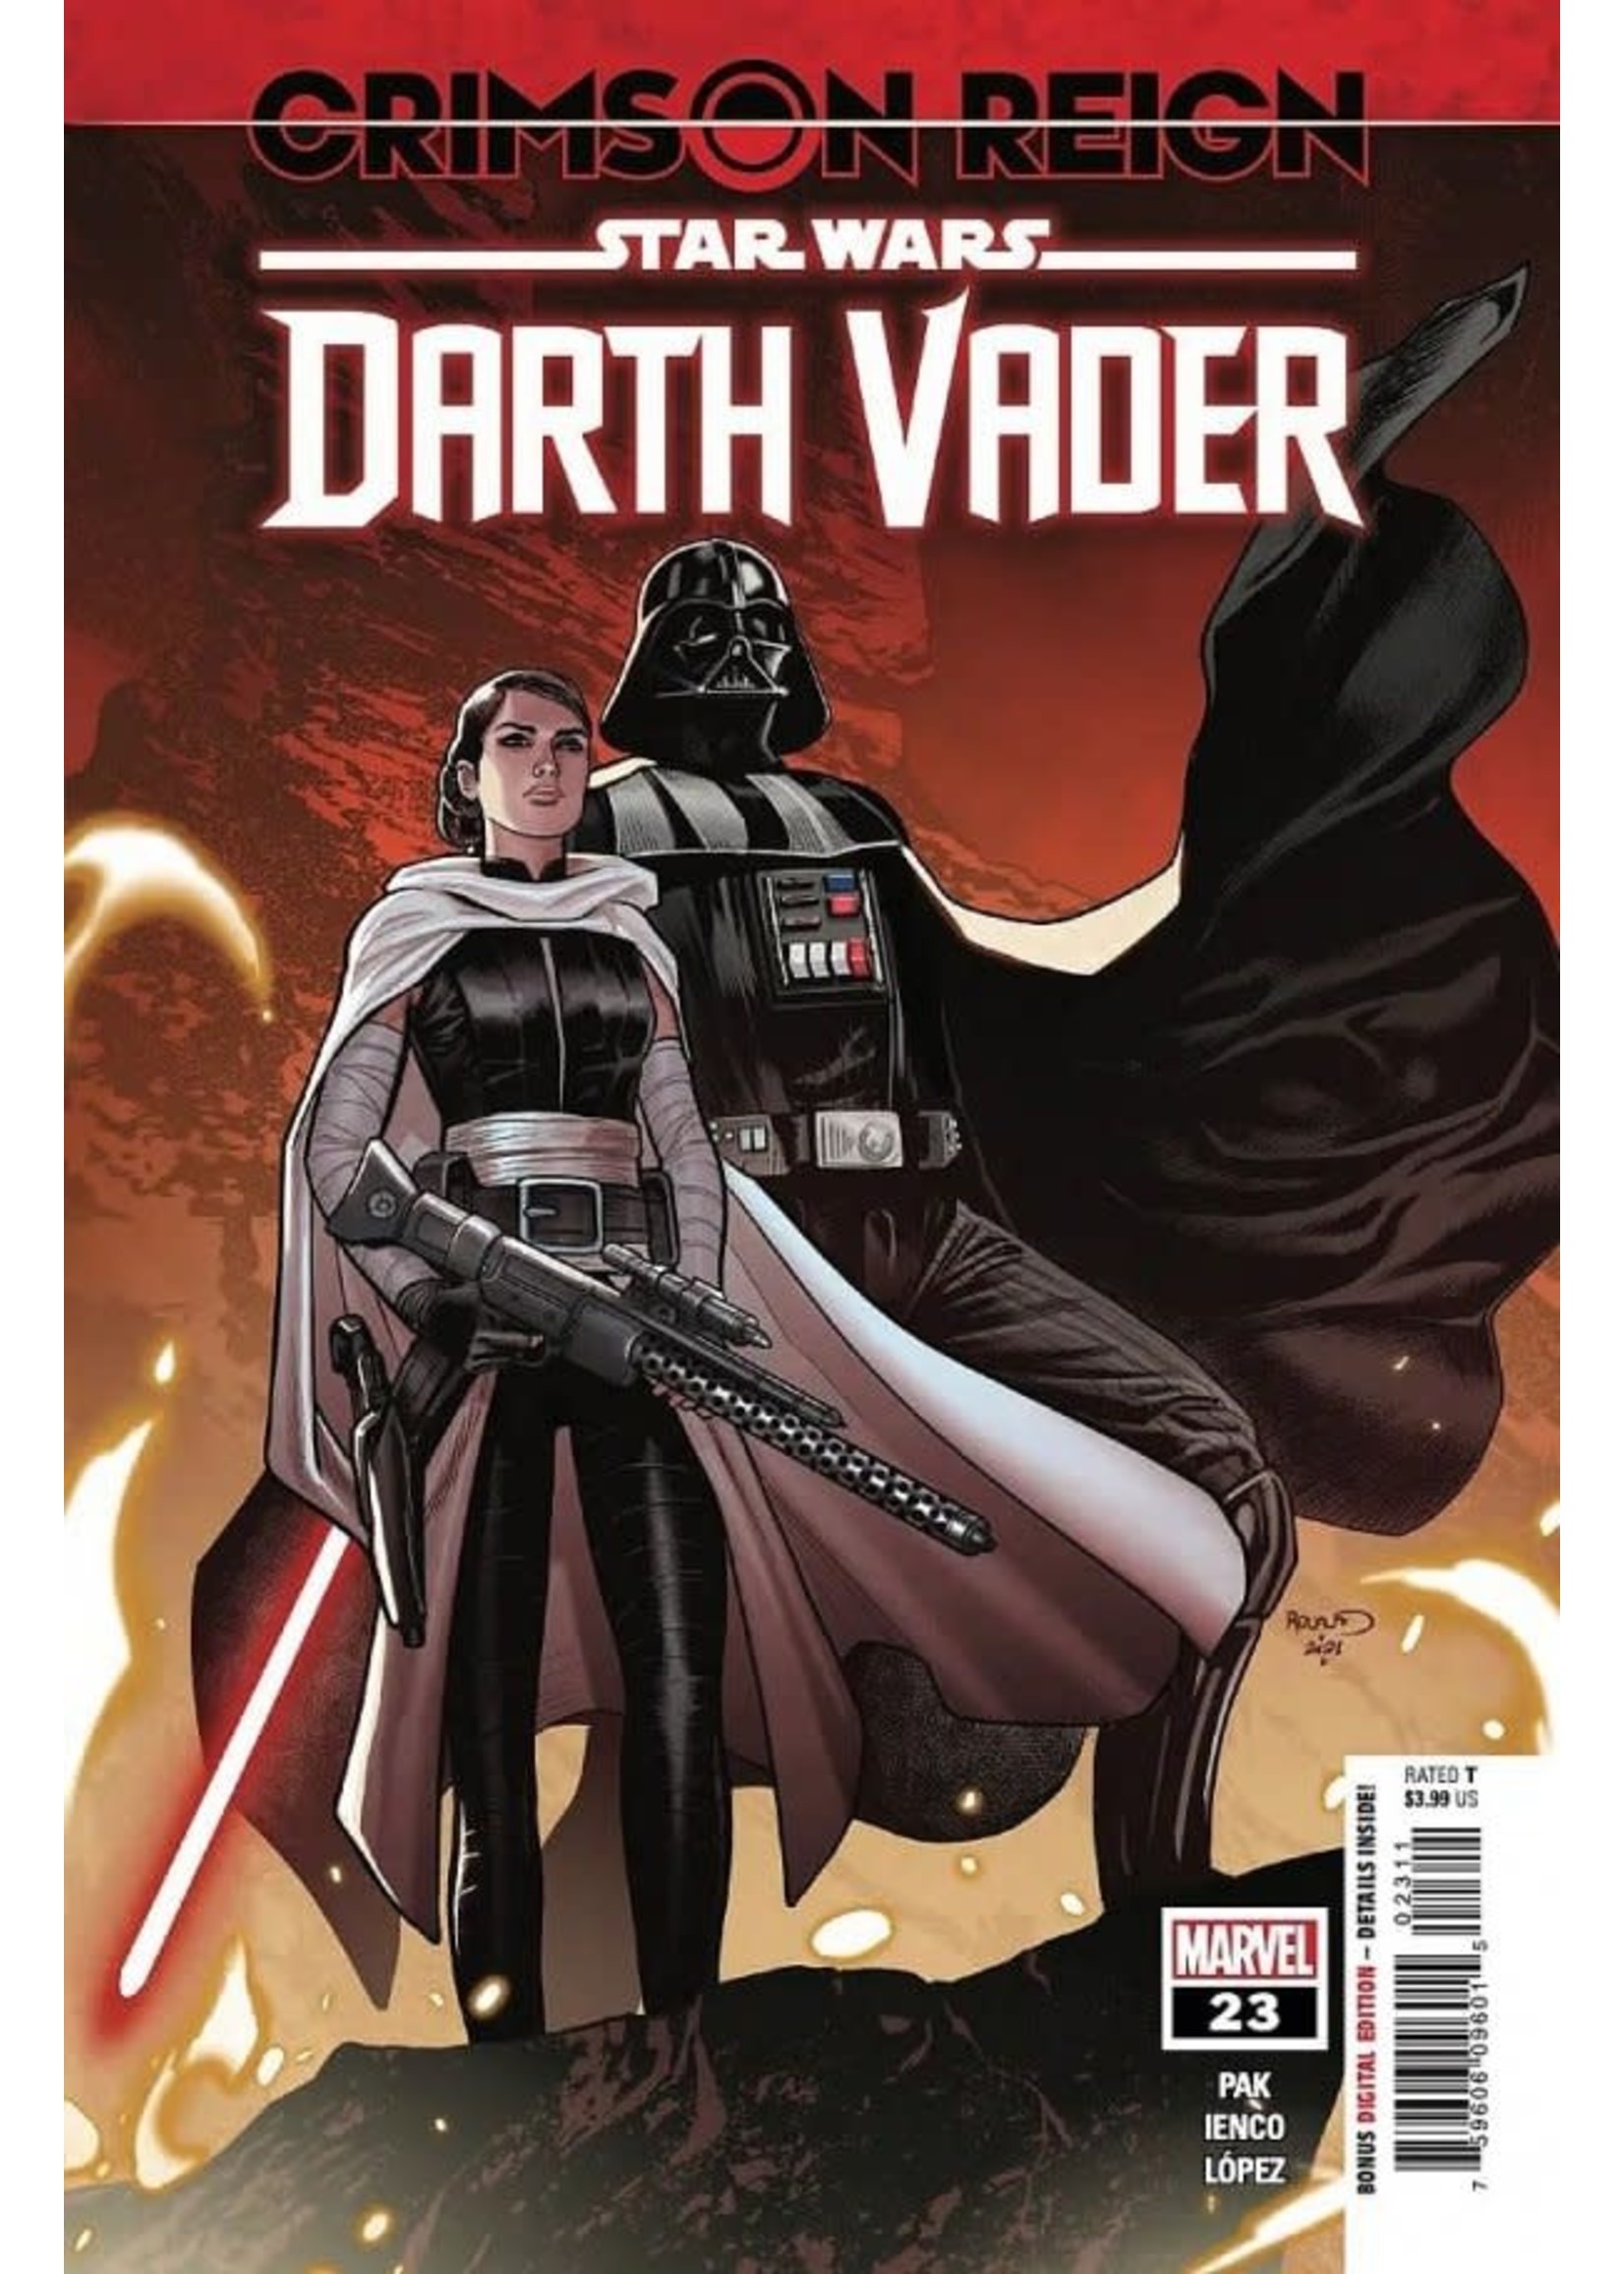 Star Wars Star Wars: Darth Vader #23